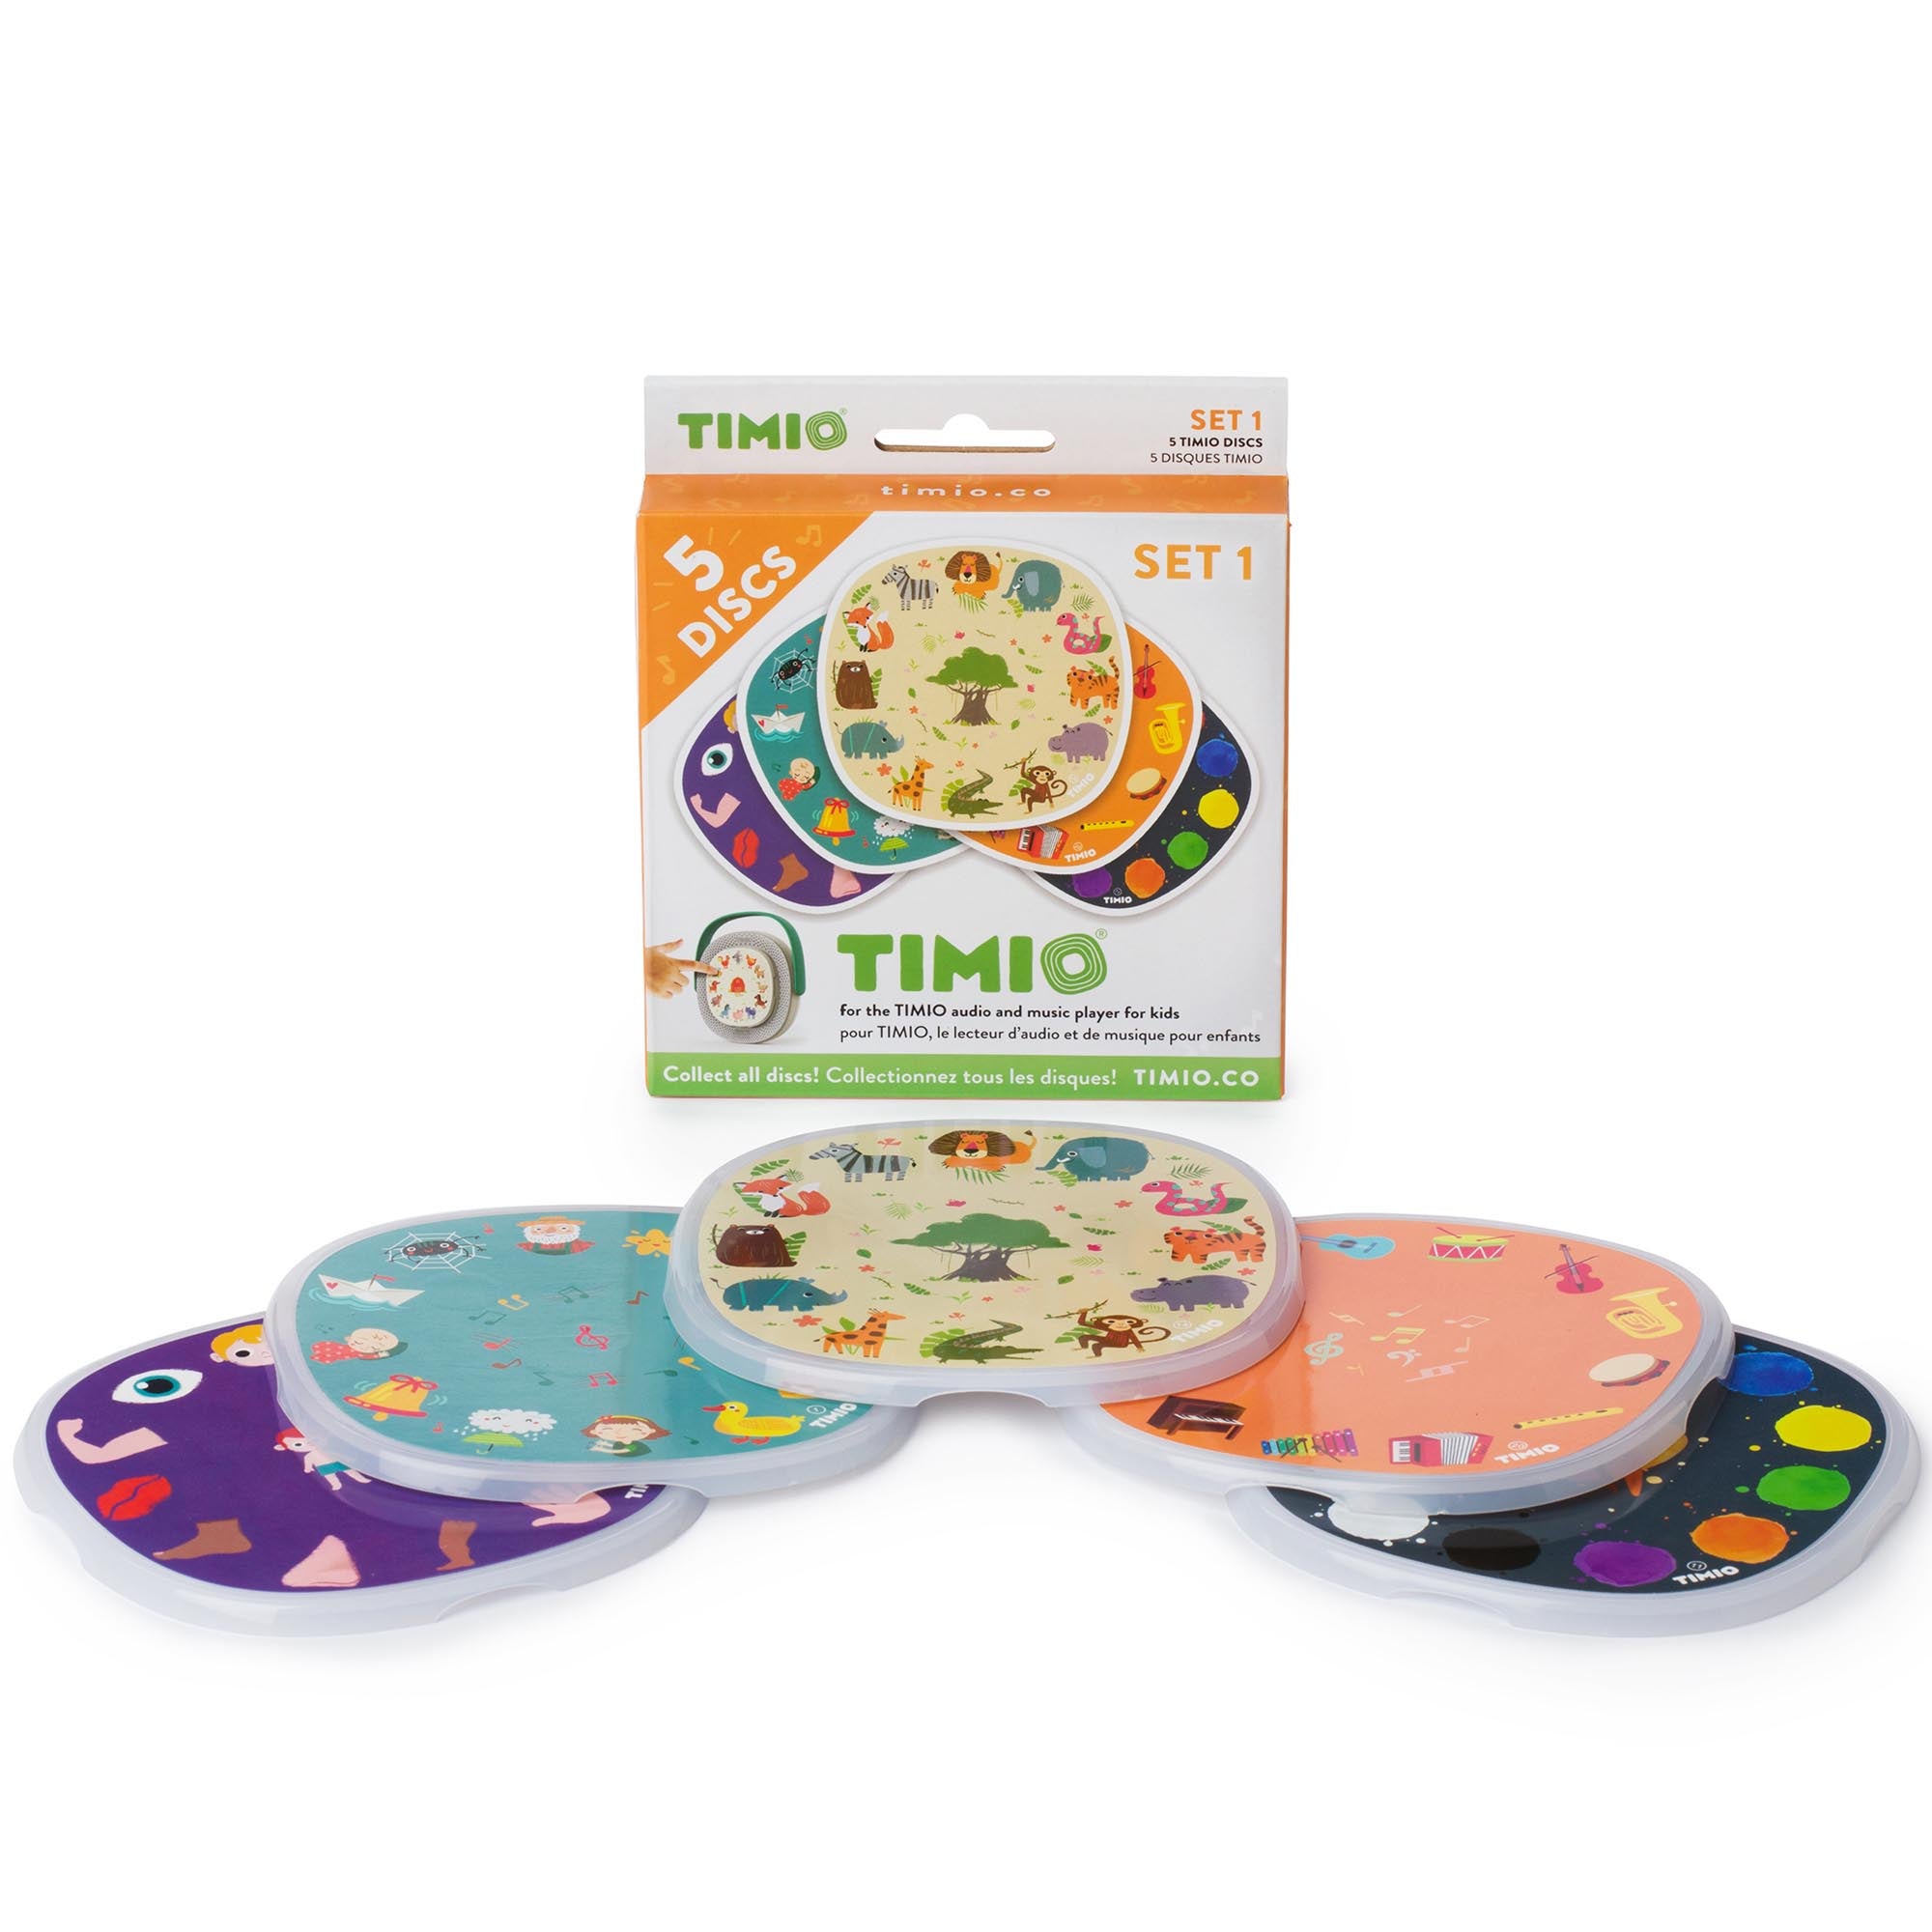 Timio - uitbreidingsset 1 (wilde dieren-instrumenten-kleuren-liedjes-lichaamsdelen)